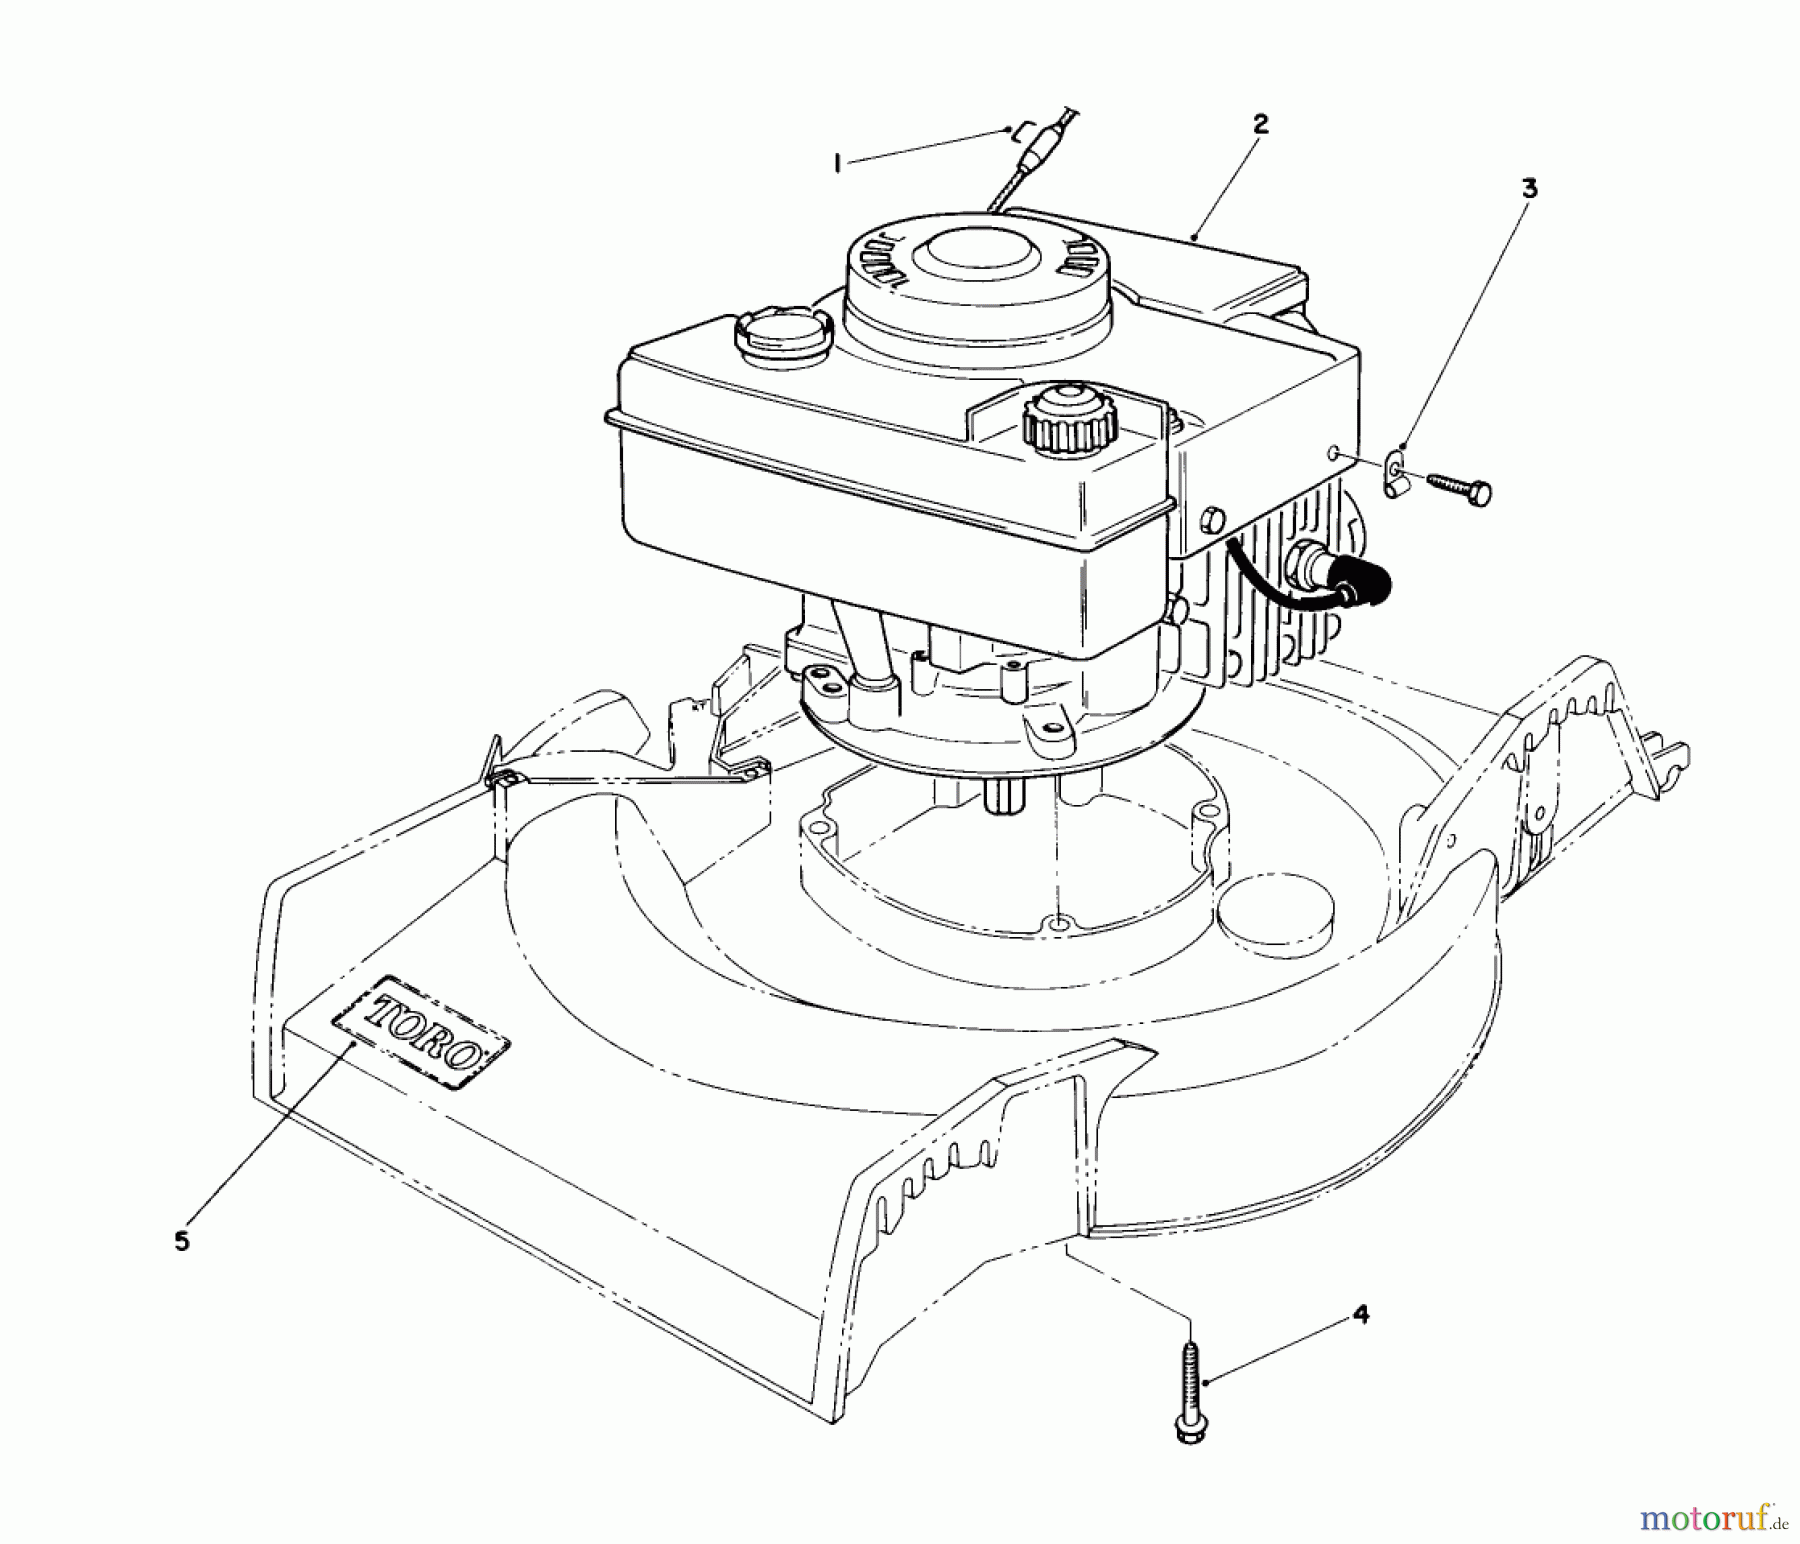  Toro Neu Mowers, Walk-Behind Seite 1 16575 - Toro Lawnmower, 1989 (9000001-9999999) ENGINE ASSEMBLY